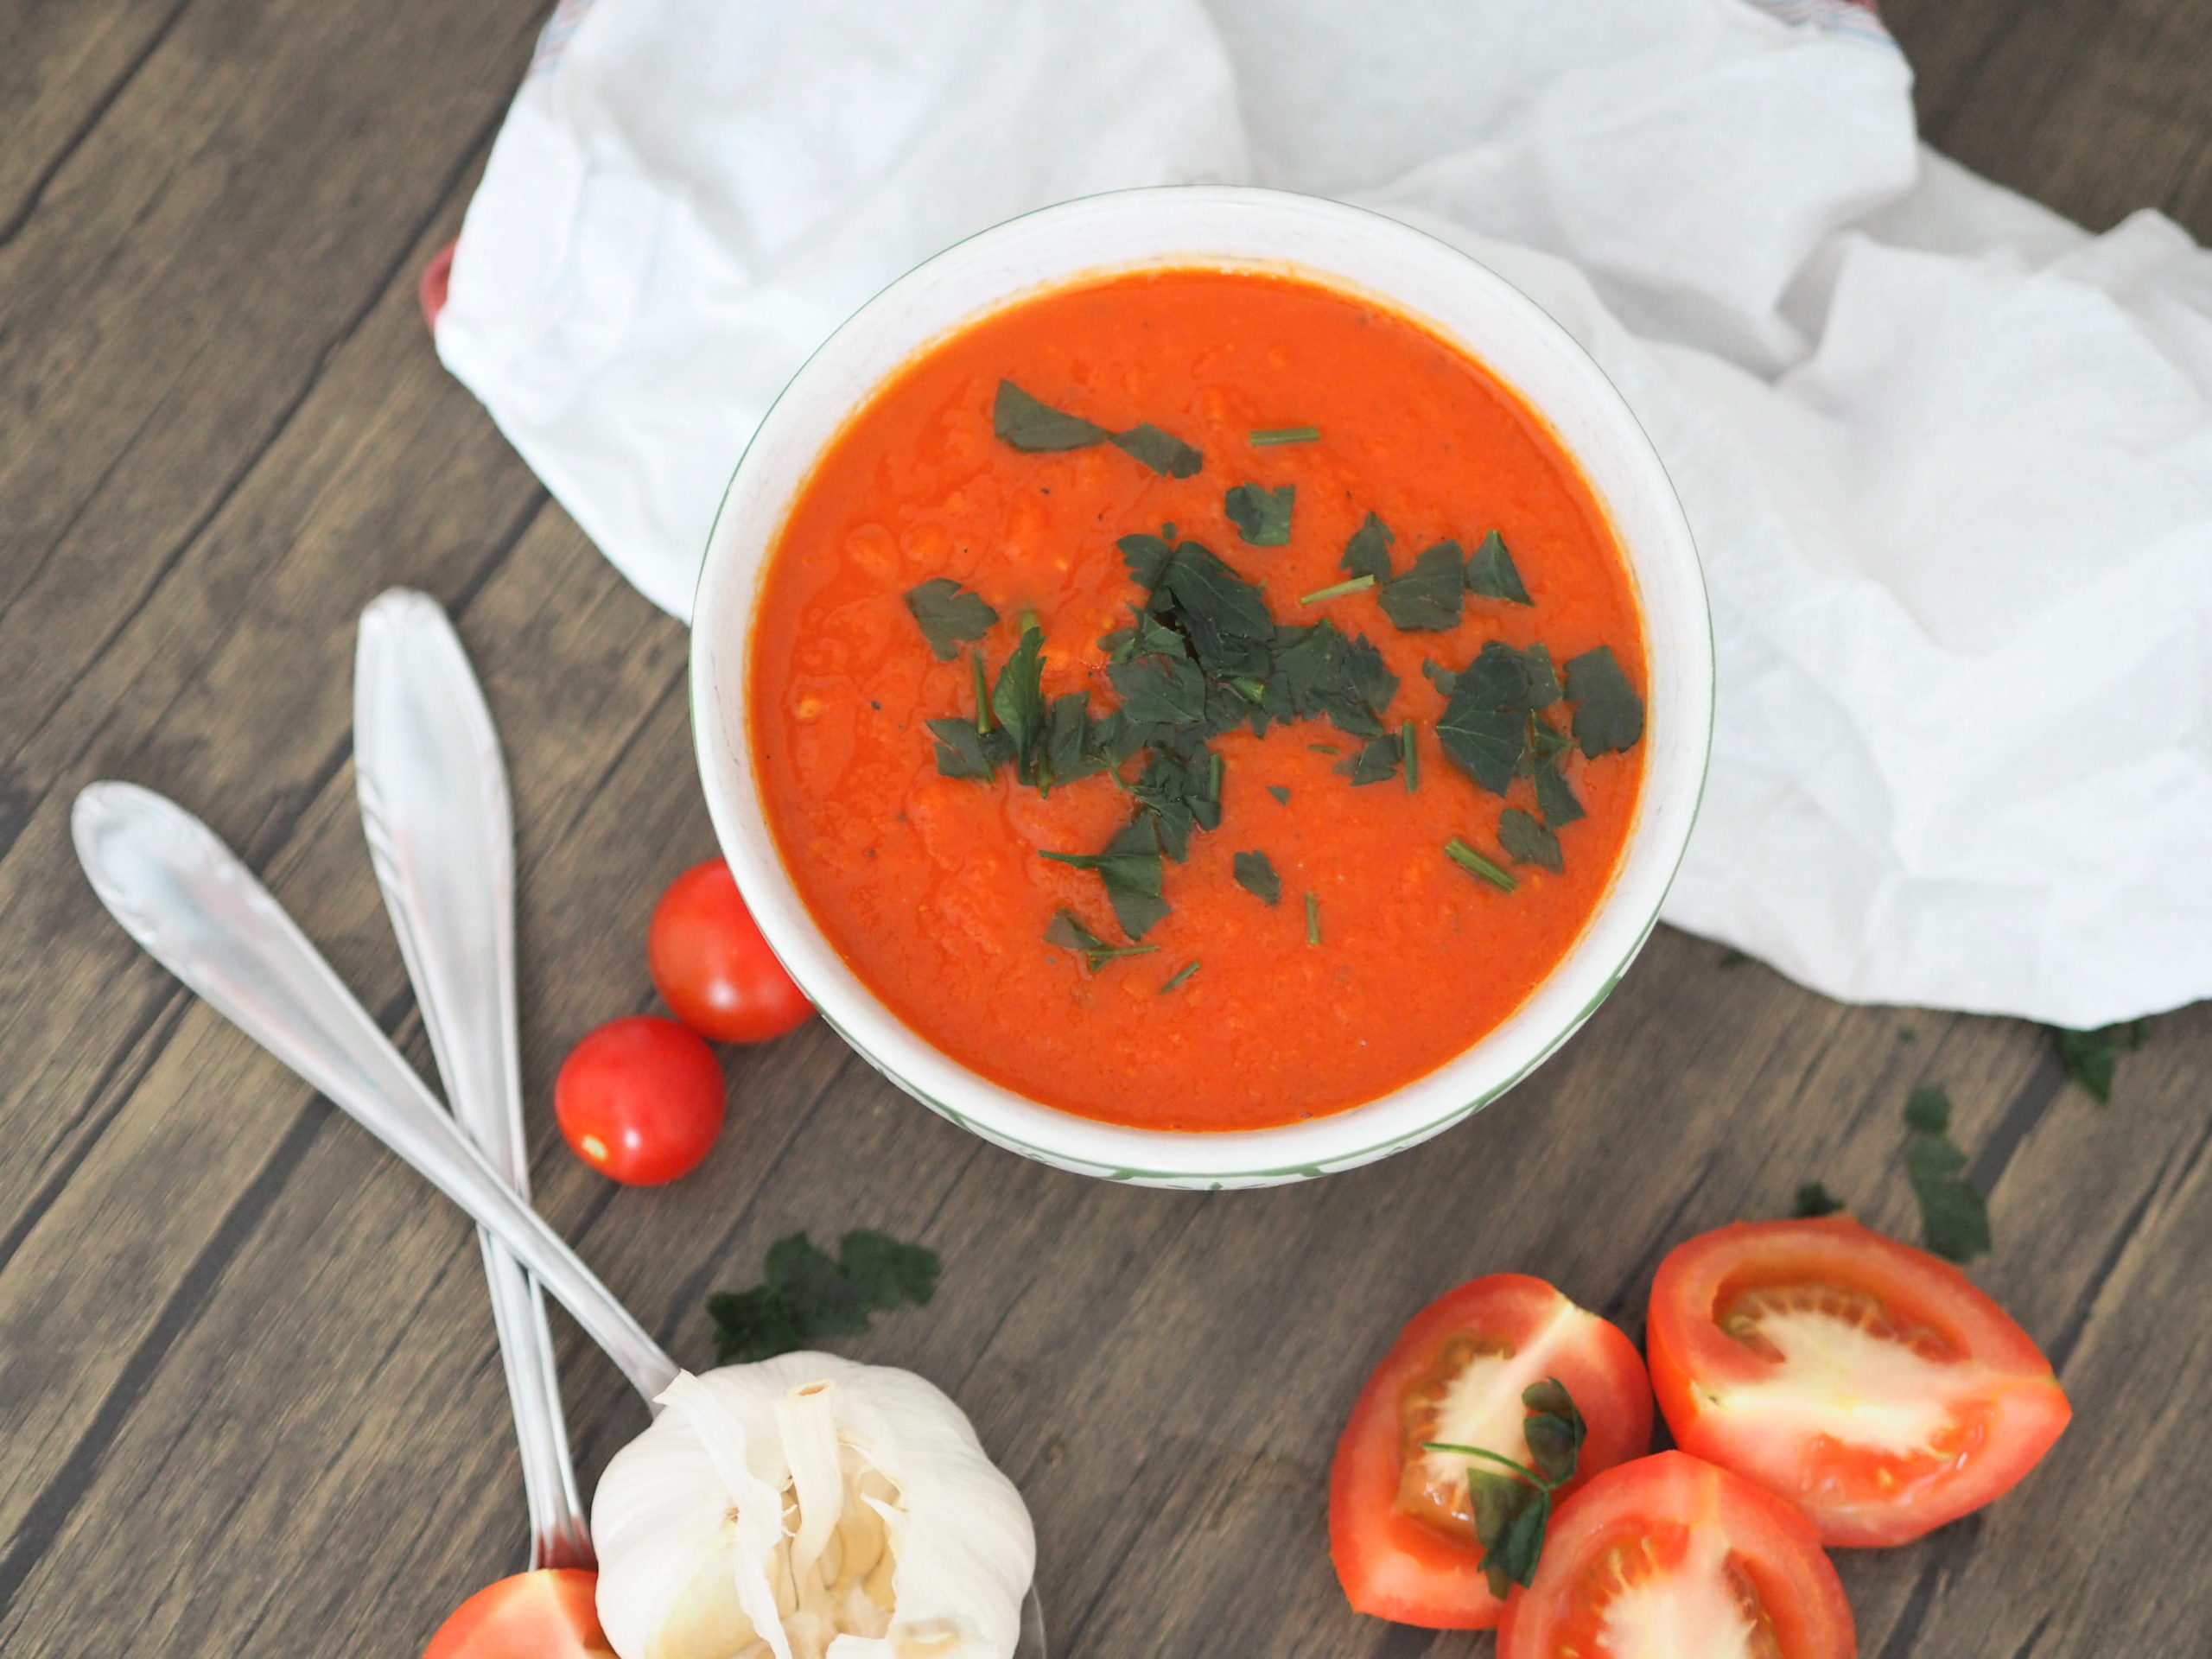 Ariana Grande Pov Porn - Karotten-Tomaten-Suppe I aromatisch und einfach - Nia Latea